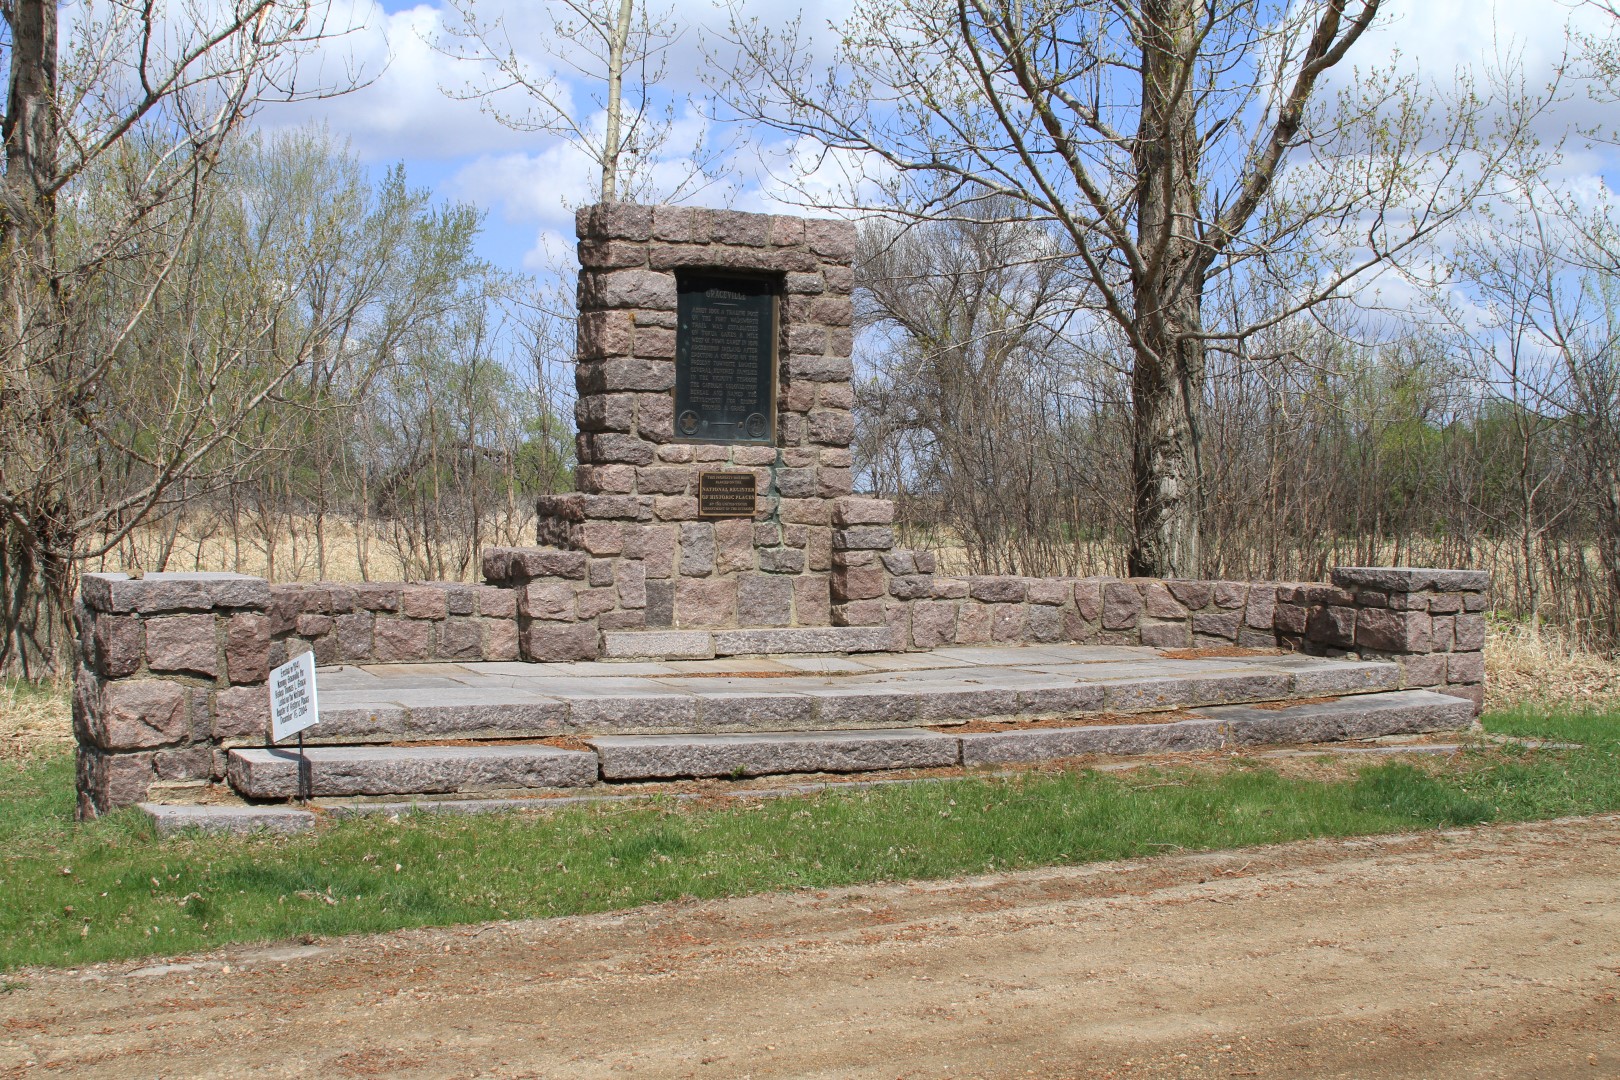 Graceville marker in 2015 before rehabilitation.